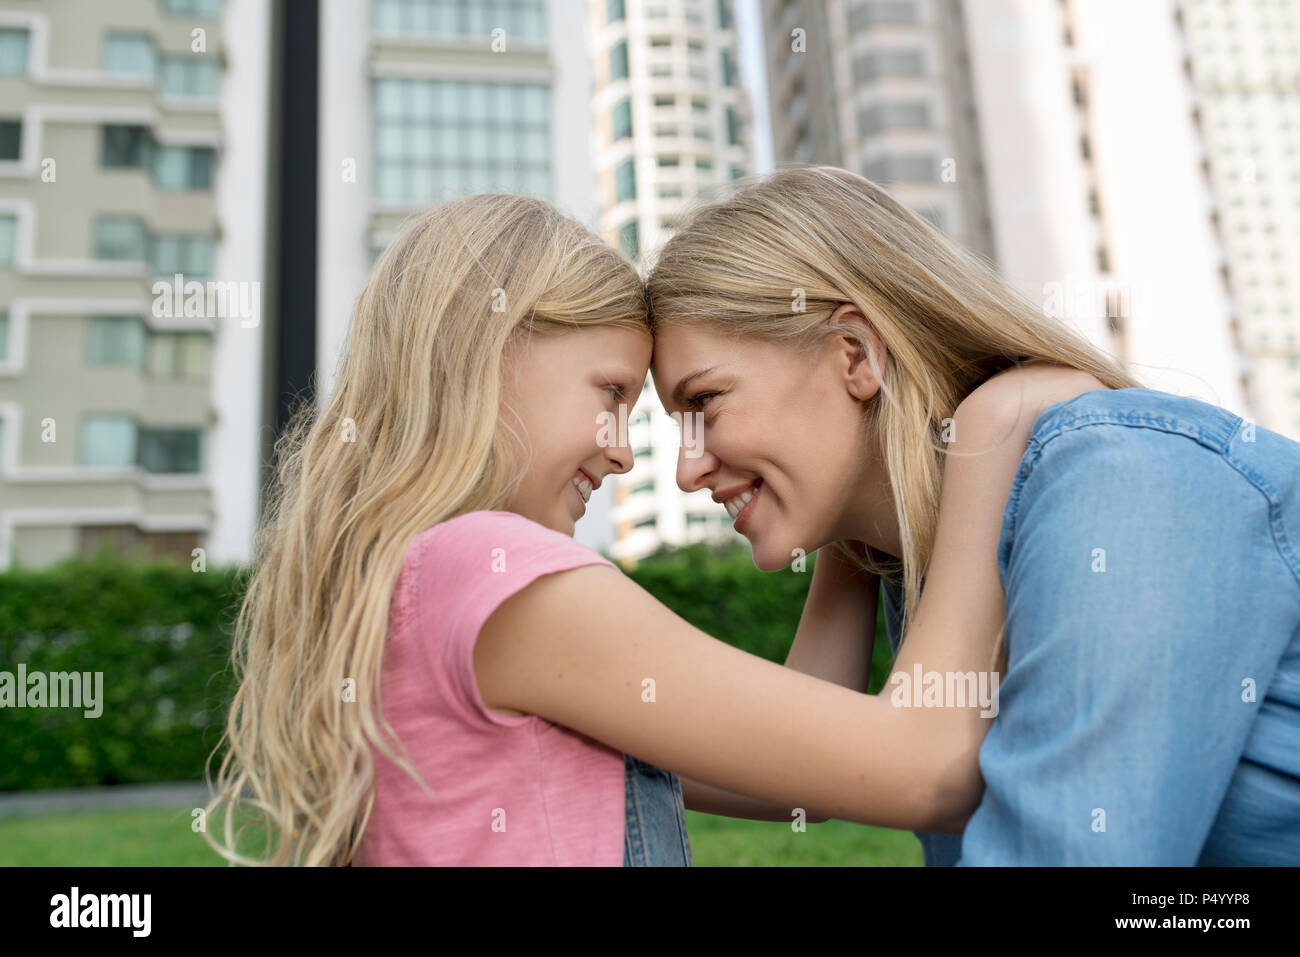 Glückliche Mutter und Tochter an jedem anderen städtischen City Garden lächelnd Stockfoto